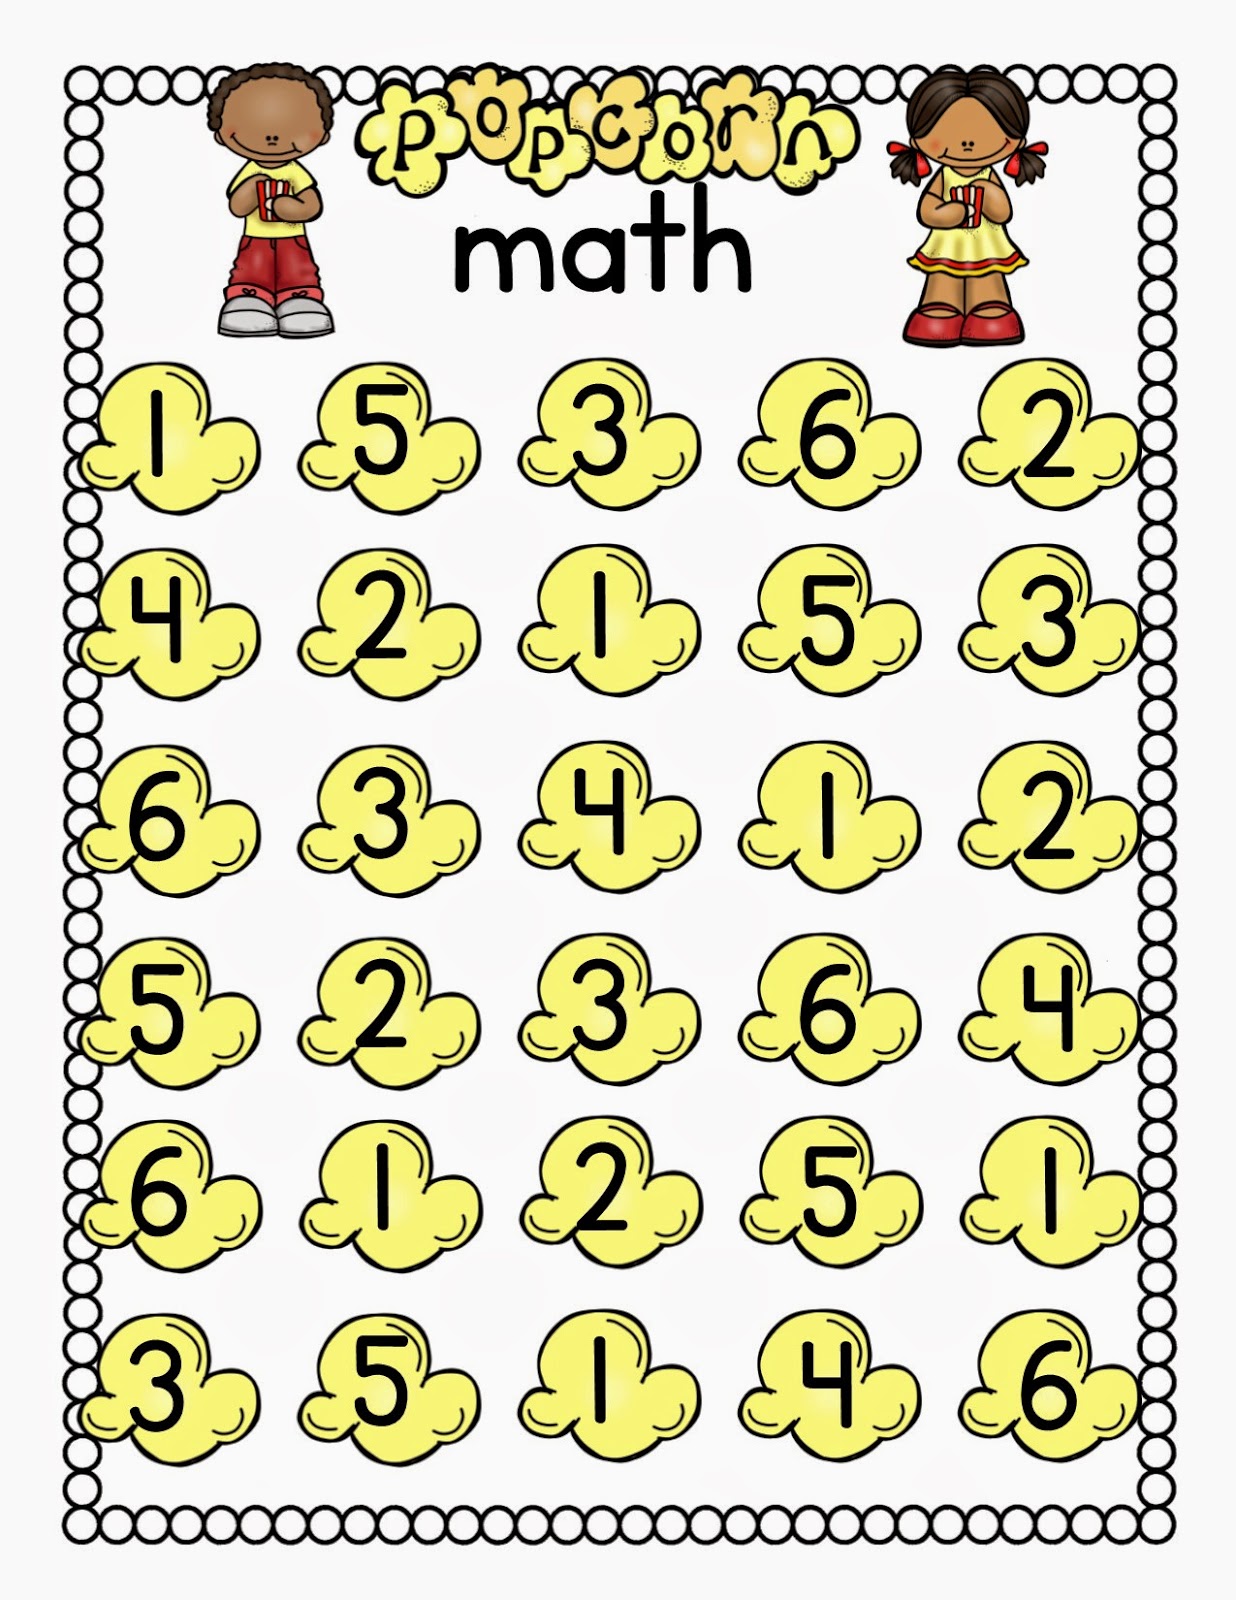 https://www.teacherspayteachers.com/Product/Math-Game-1372666